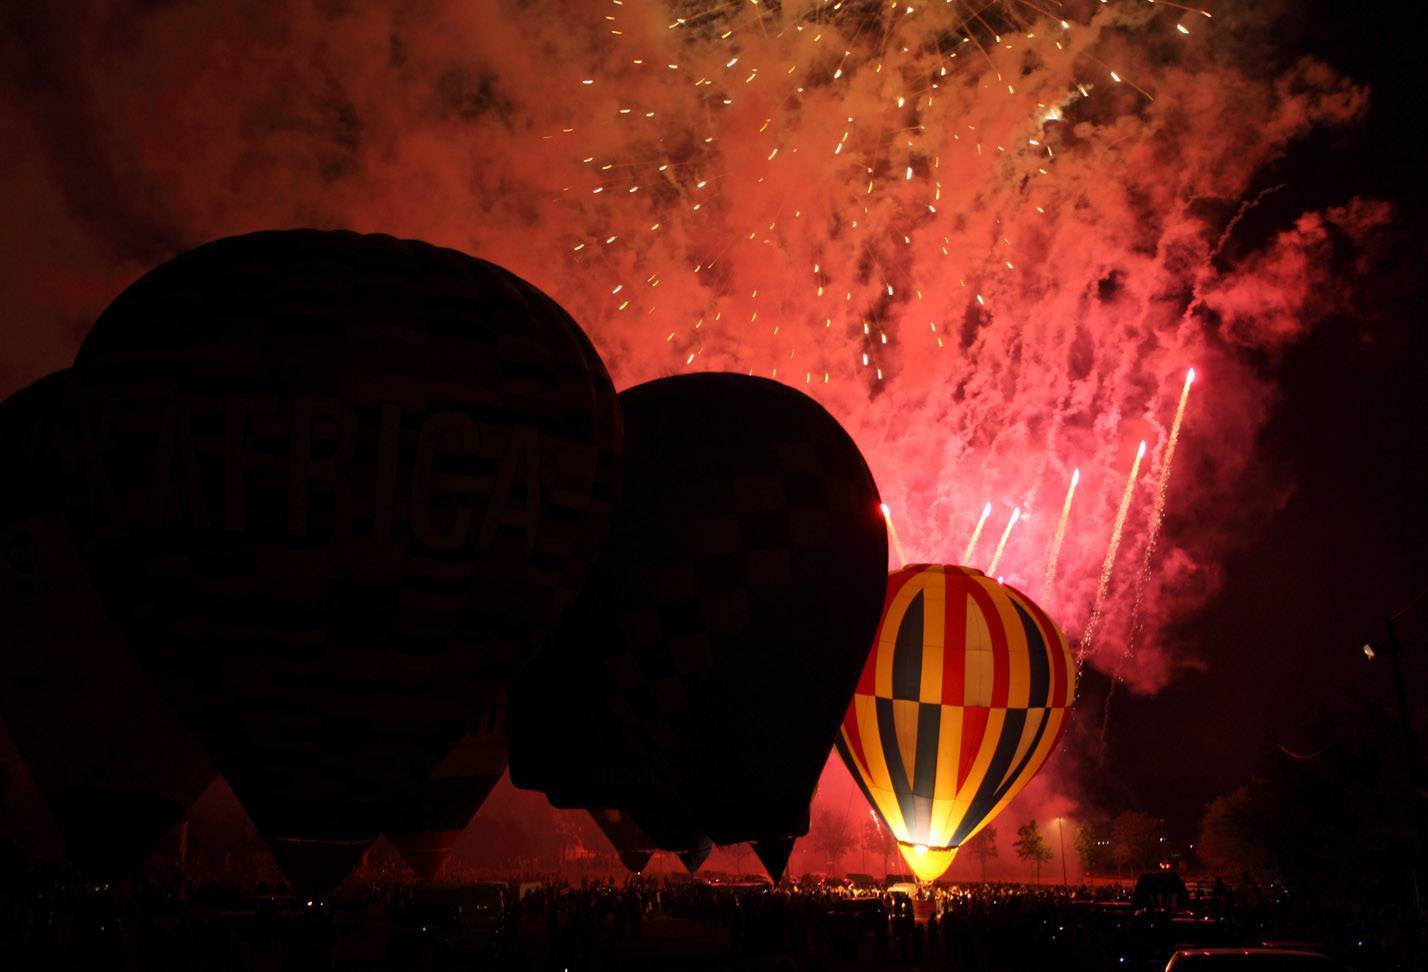 European Balloon Festival, Igualada, Barcelona